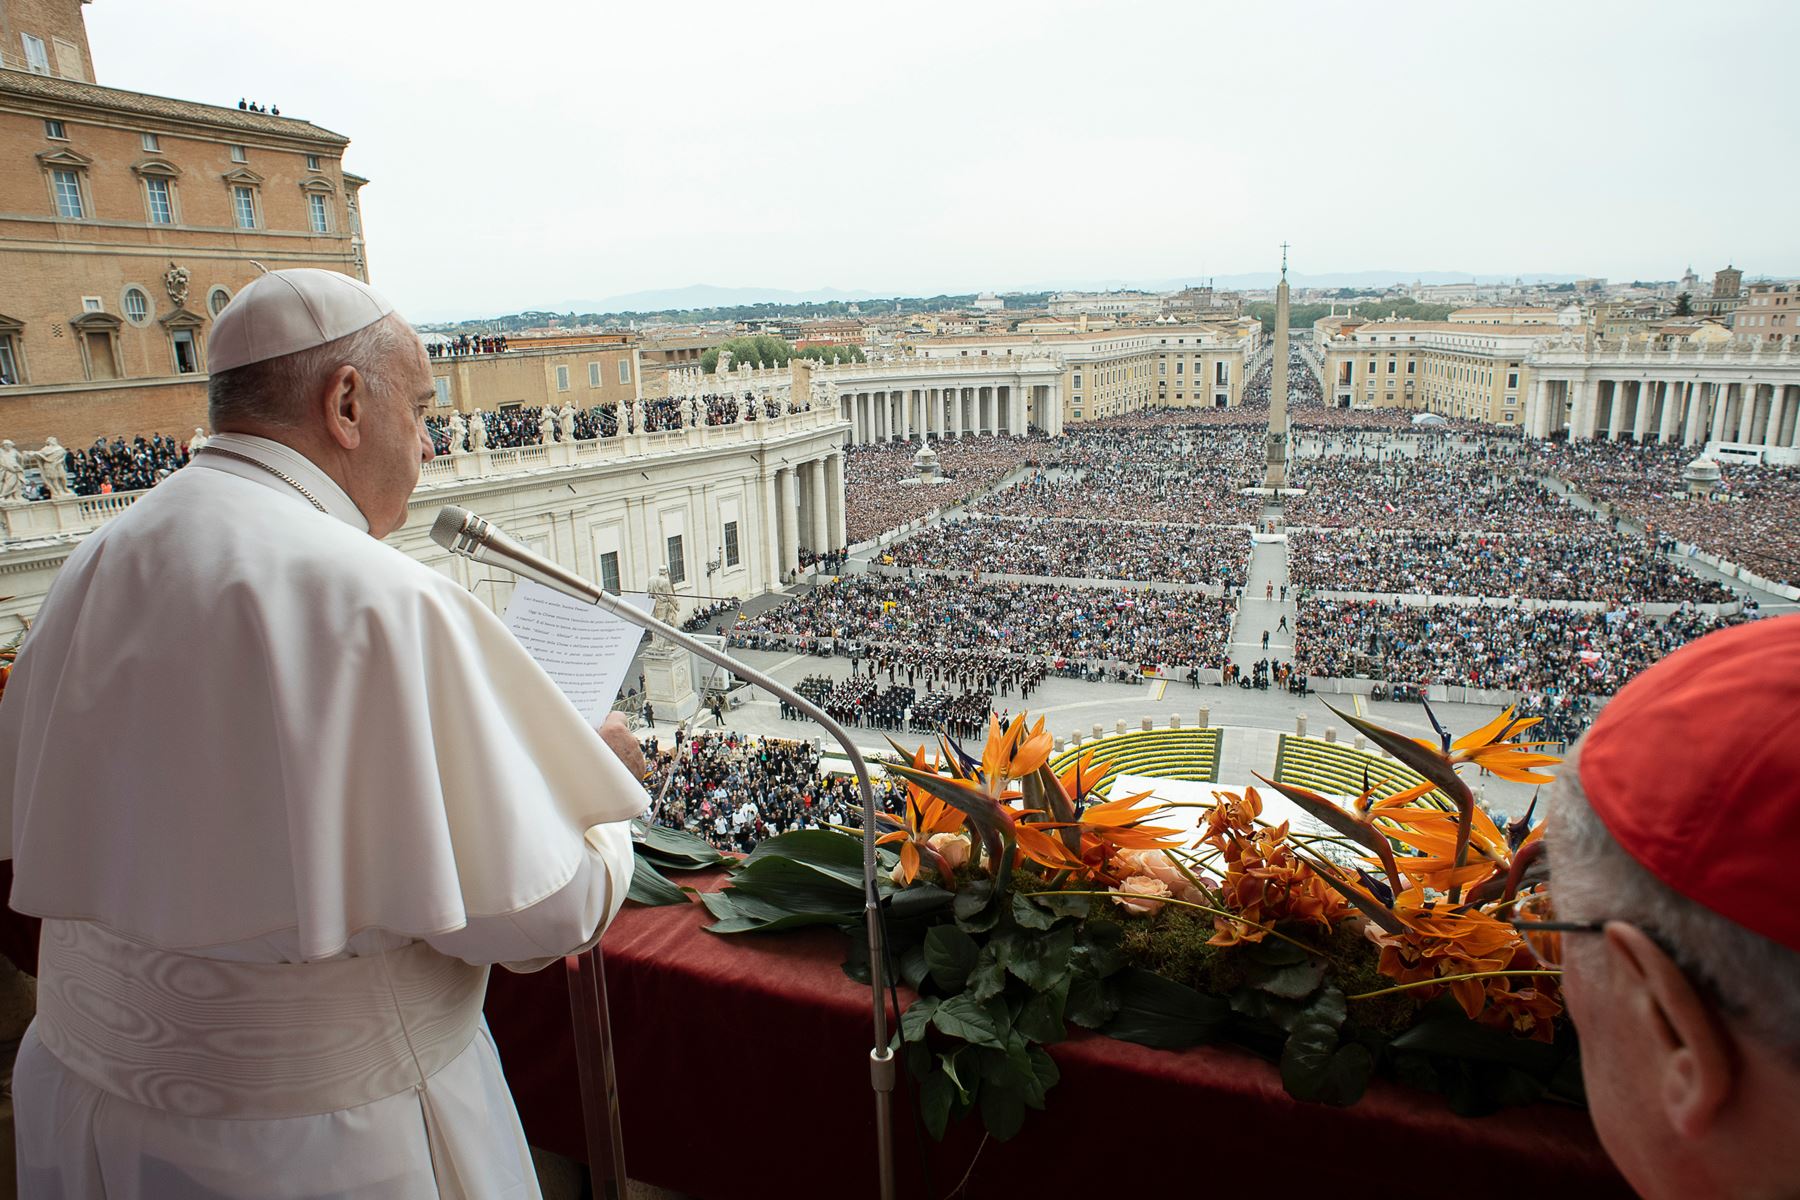 Papa Francisco entregando la bendición "Urbi et Orbi" a la ciudad y al mundo desde el balcón de la basílica de San Pedro después de la misa del domingo de Pascua.
Foto: Oficina de prensa del Vaticano